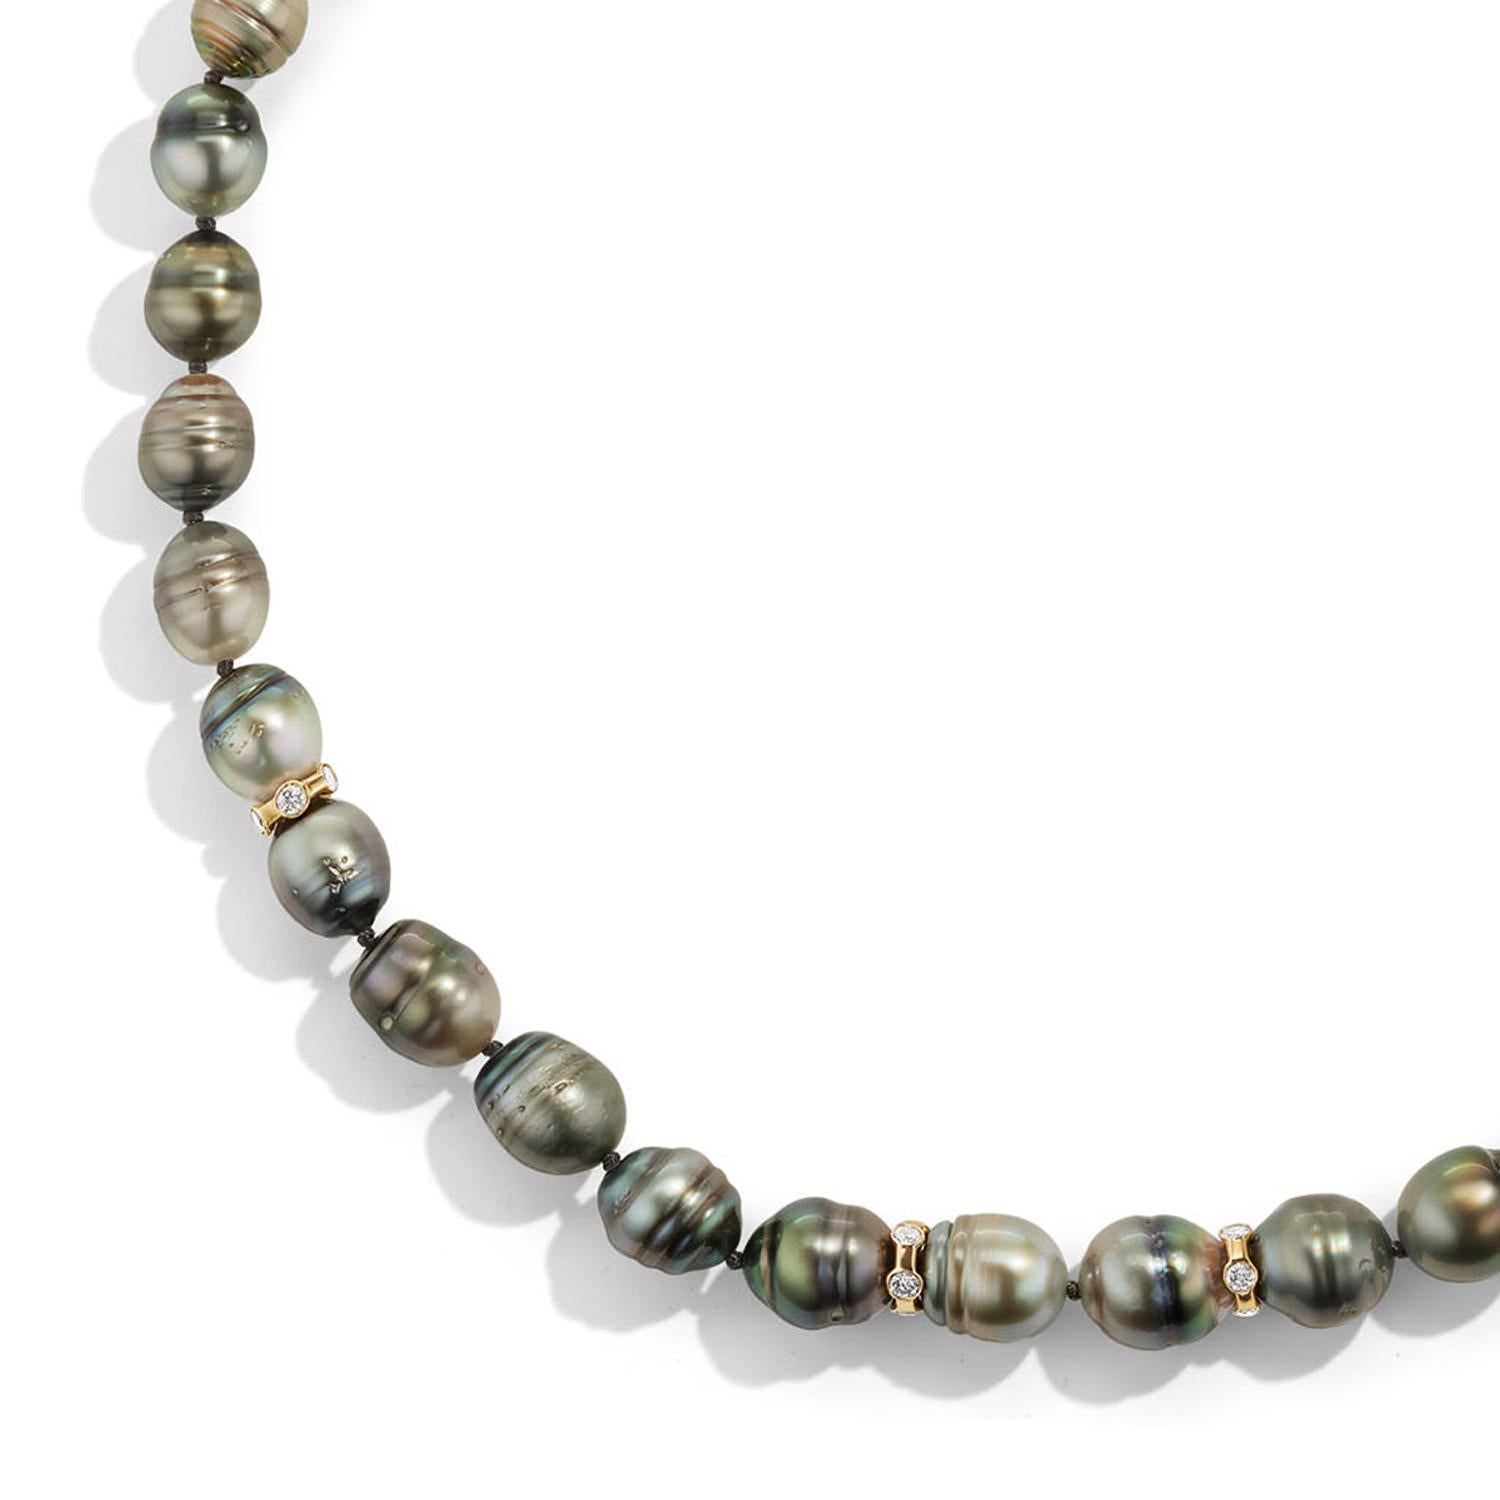 Ein Grundnahrungsmittel für Schmucksammler in ihrer Jewelry Collection'S. Dieser 18-Zoll-Strang aus natürlichen Tahiti-Perlen hat vier diamantbesetzte Goldperlen zwischen den Perlen, um die Opulenz der Tahiti-Perlen zu ergänzen.

Jede Perle ist